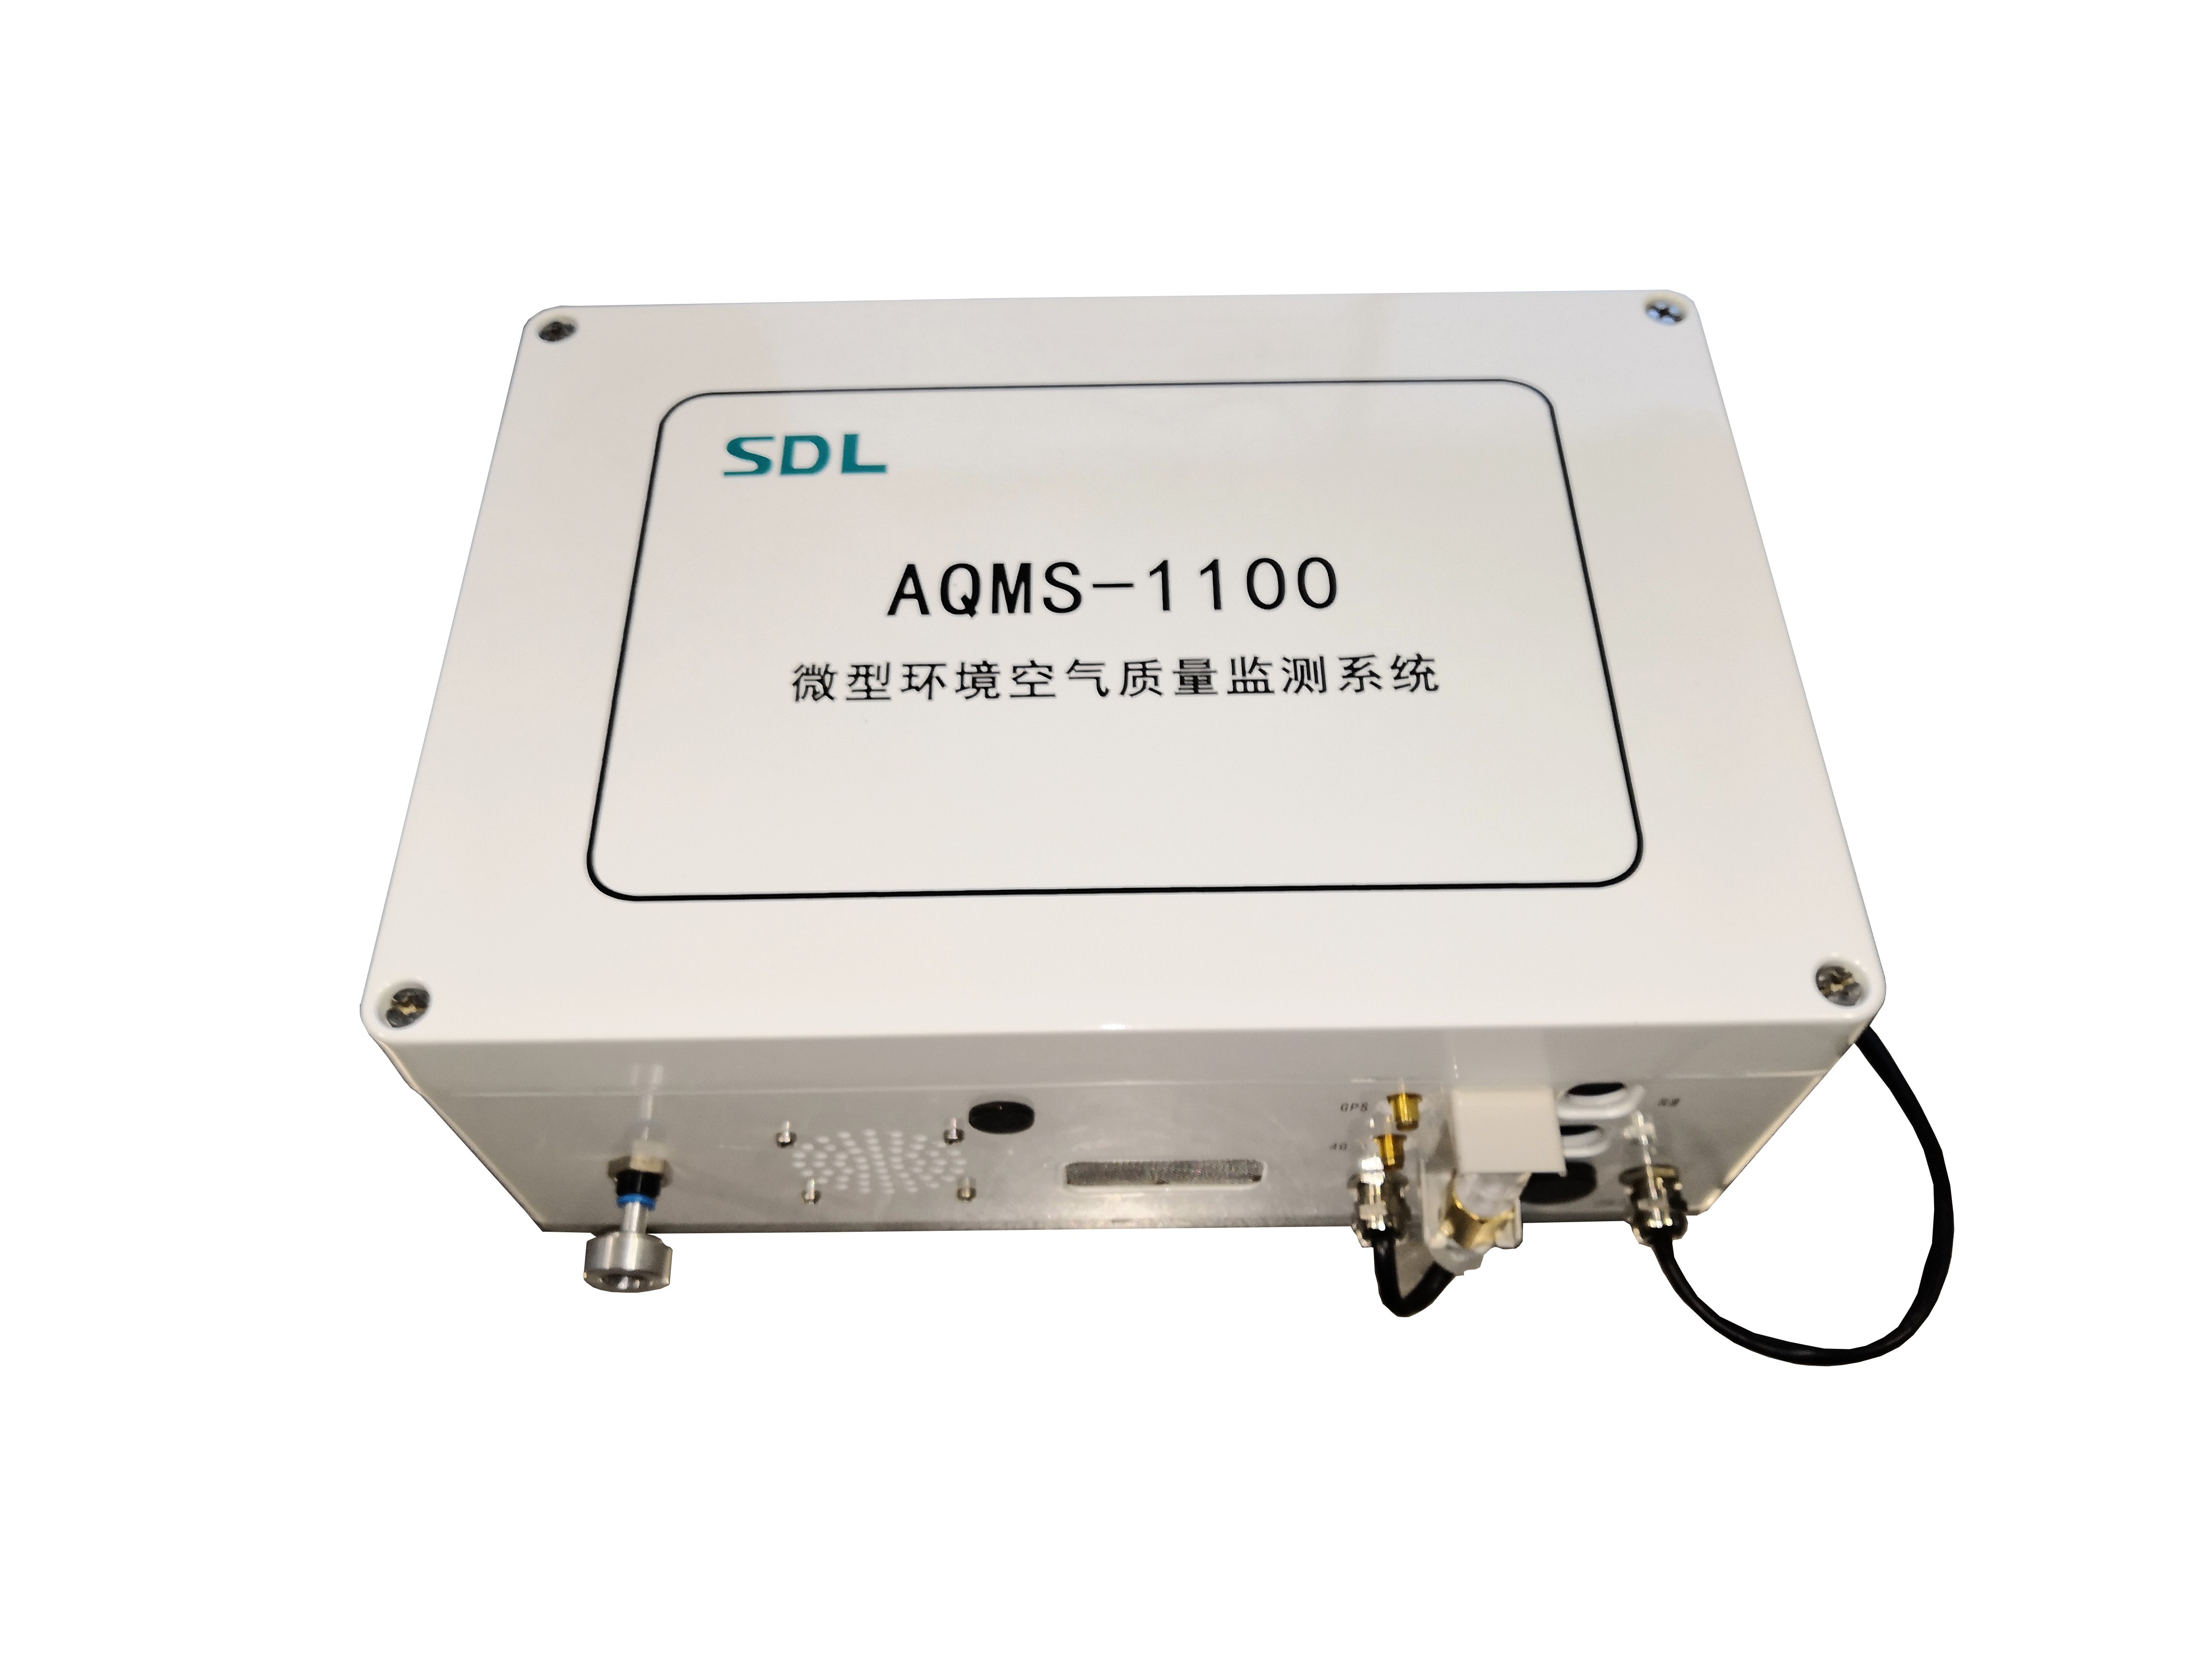 雪迪龙微型空气质量监测系统AQMS-1100